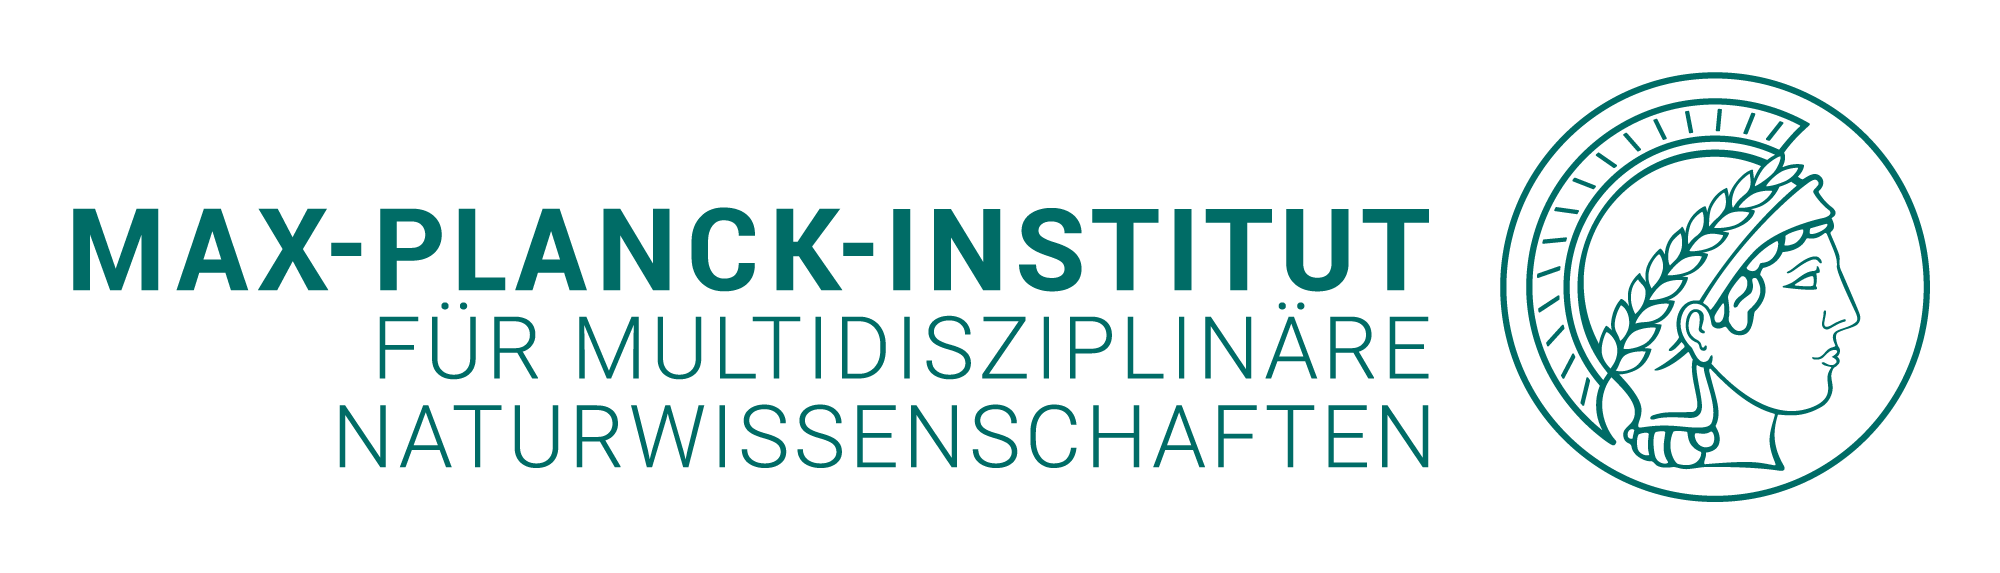 Max-Planck-Institut für multidisziplinäre Naturwissenschaften